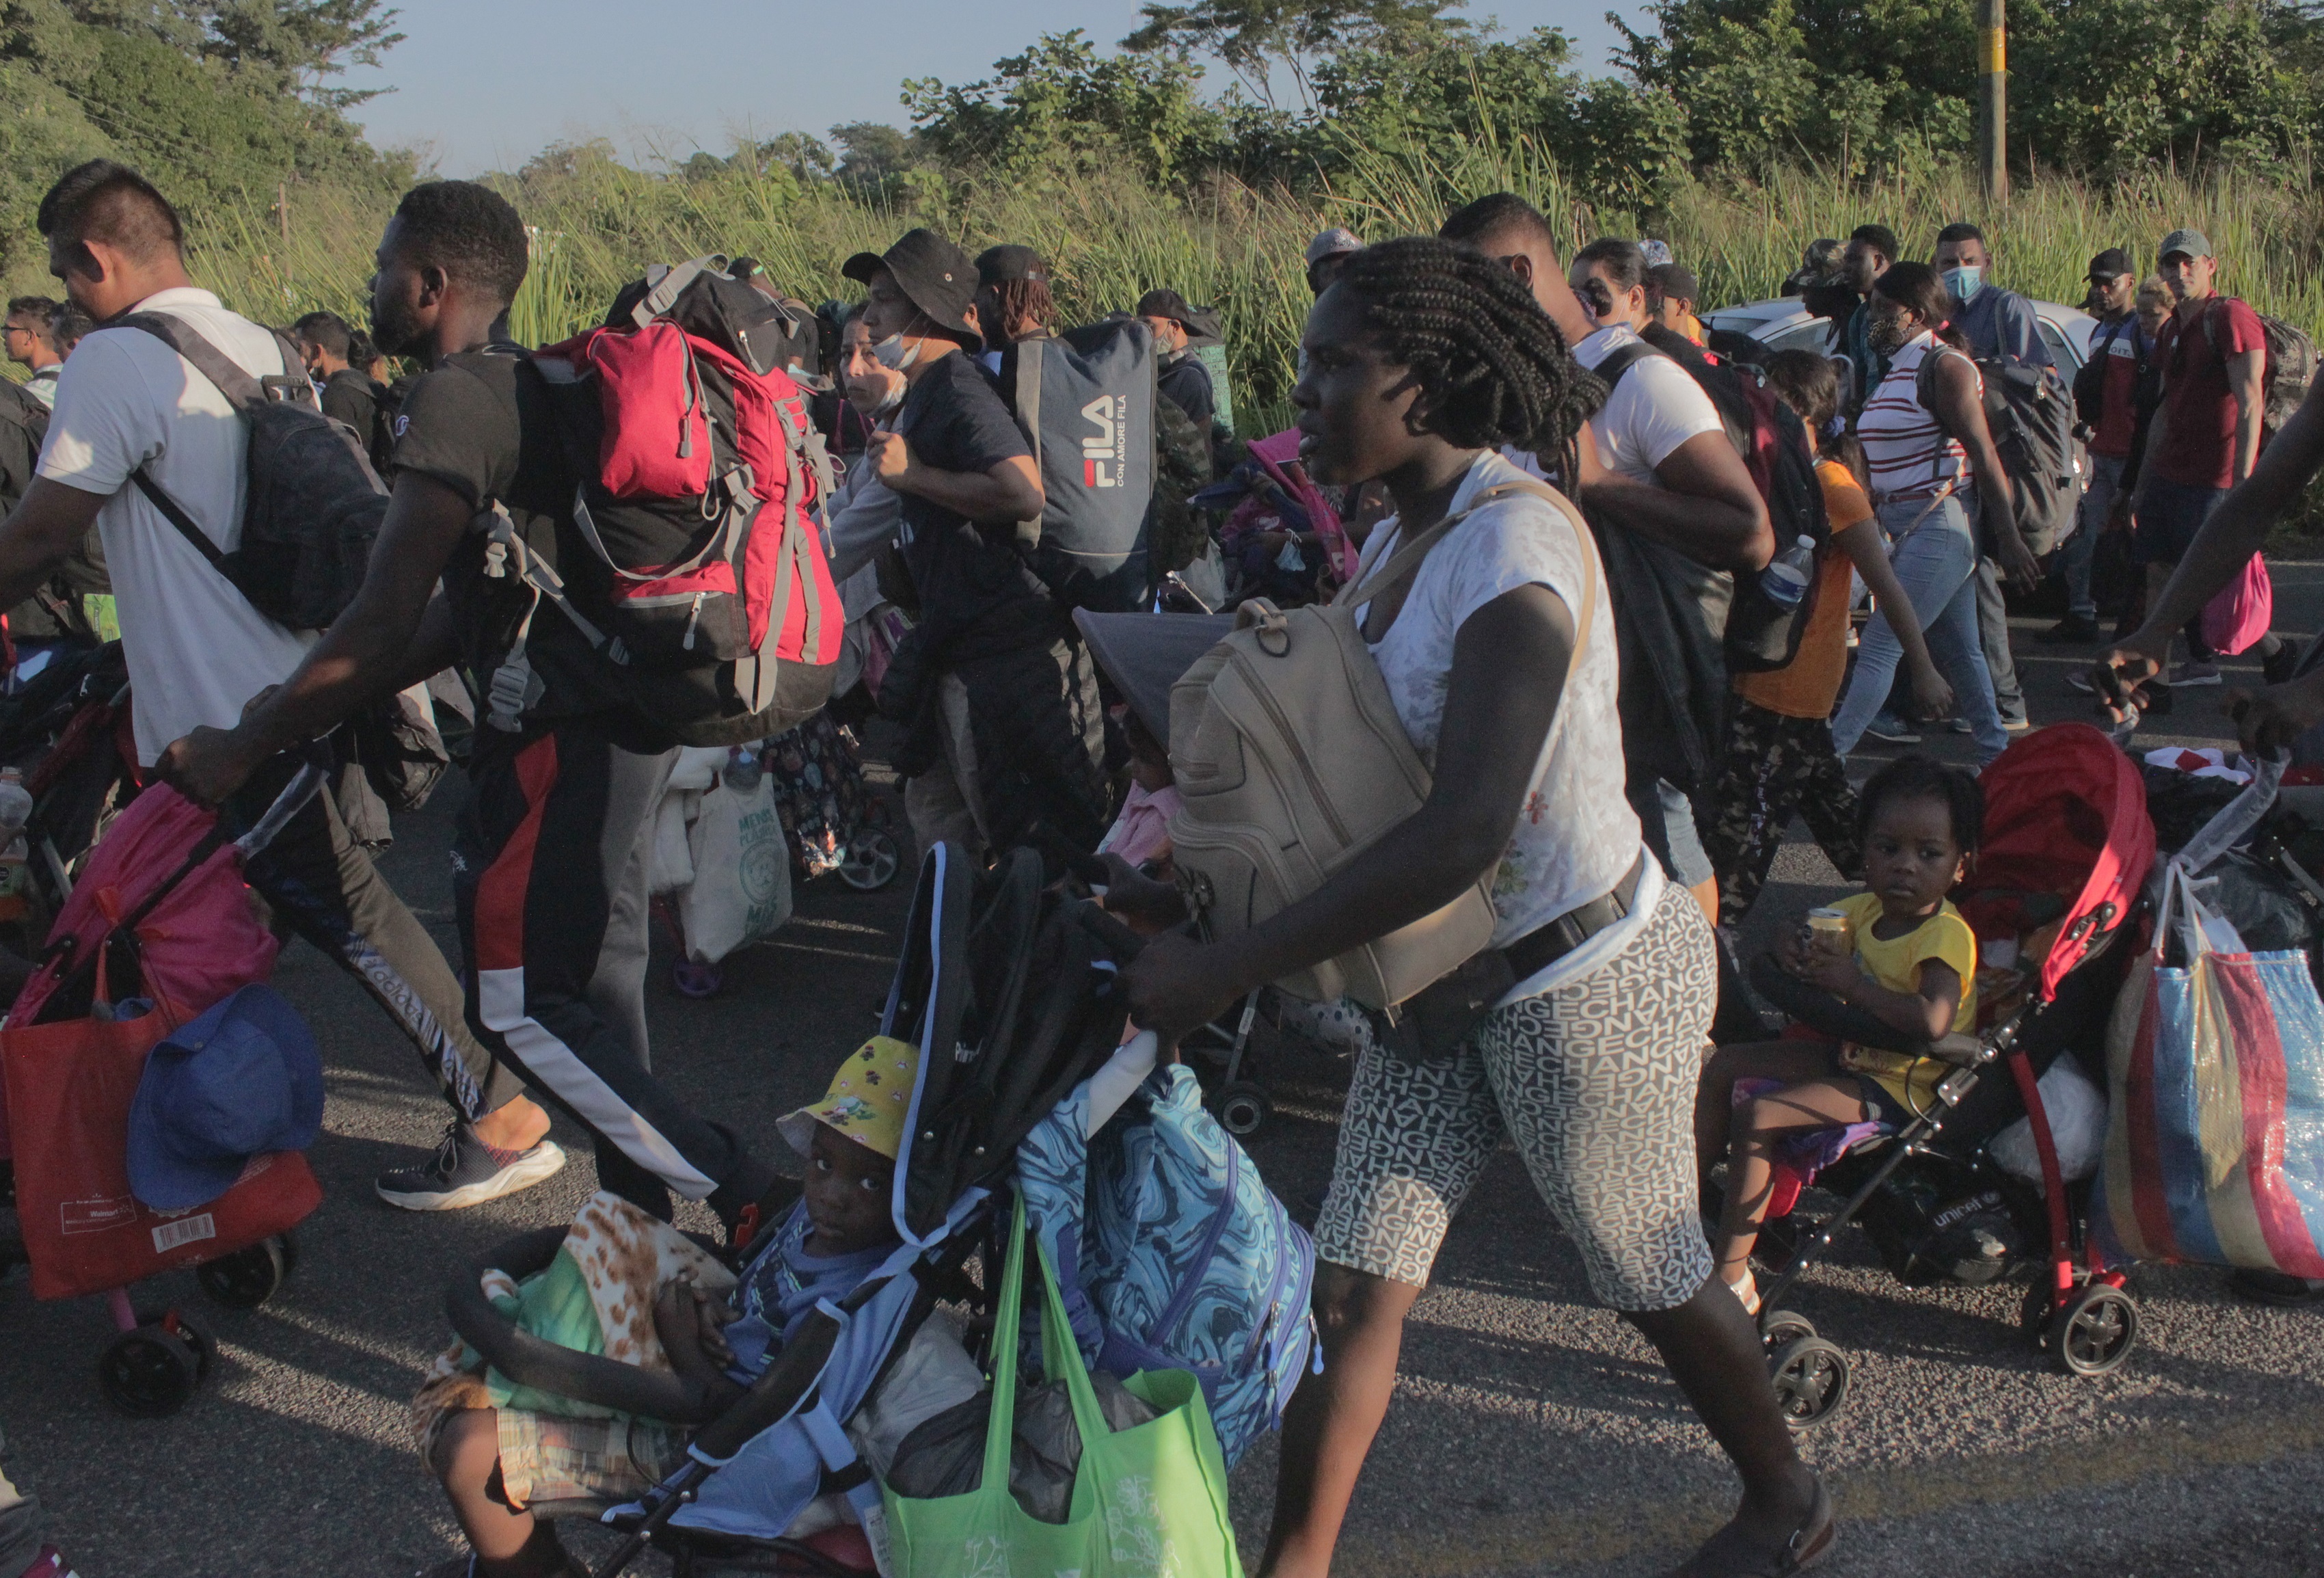 Cientos de migrantes centroamericanos, haitianos y africanos se encuentran varados en Tapachula desde hace meses. (Foto: EFE/Juan Manuel Blanco/ Archivo)
